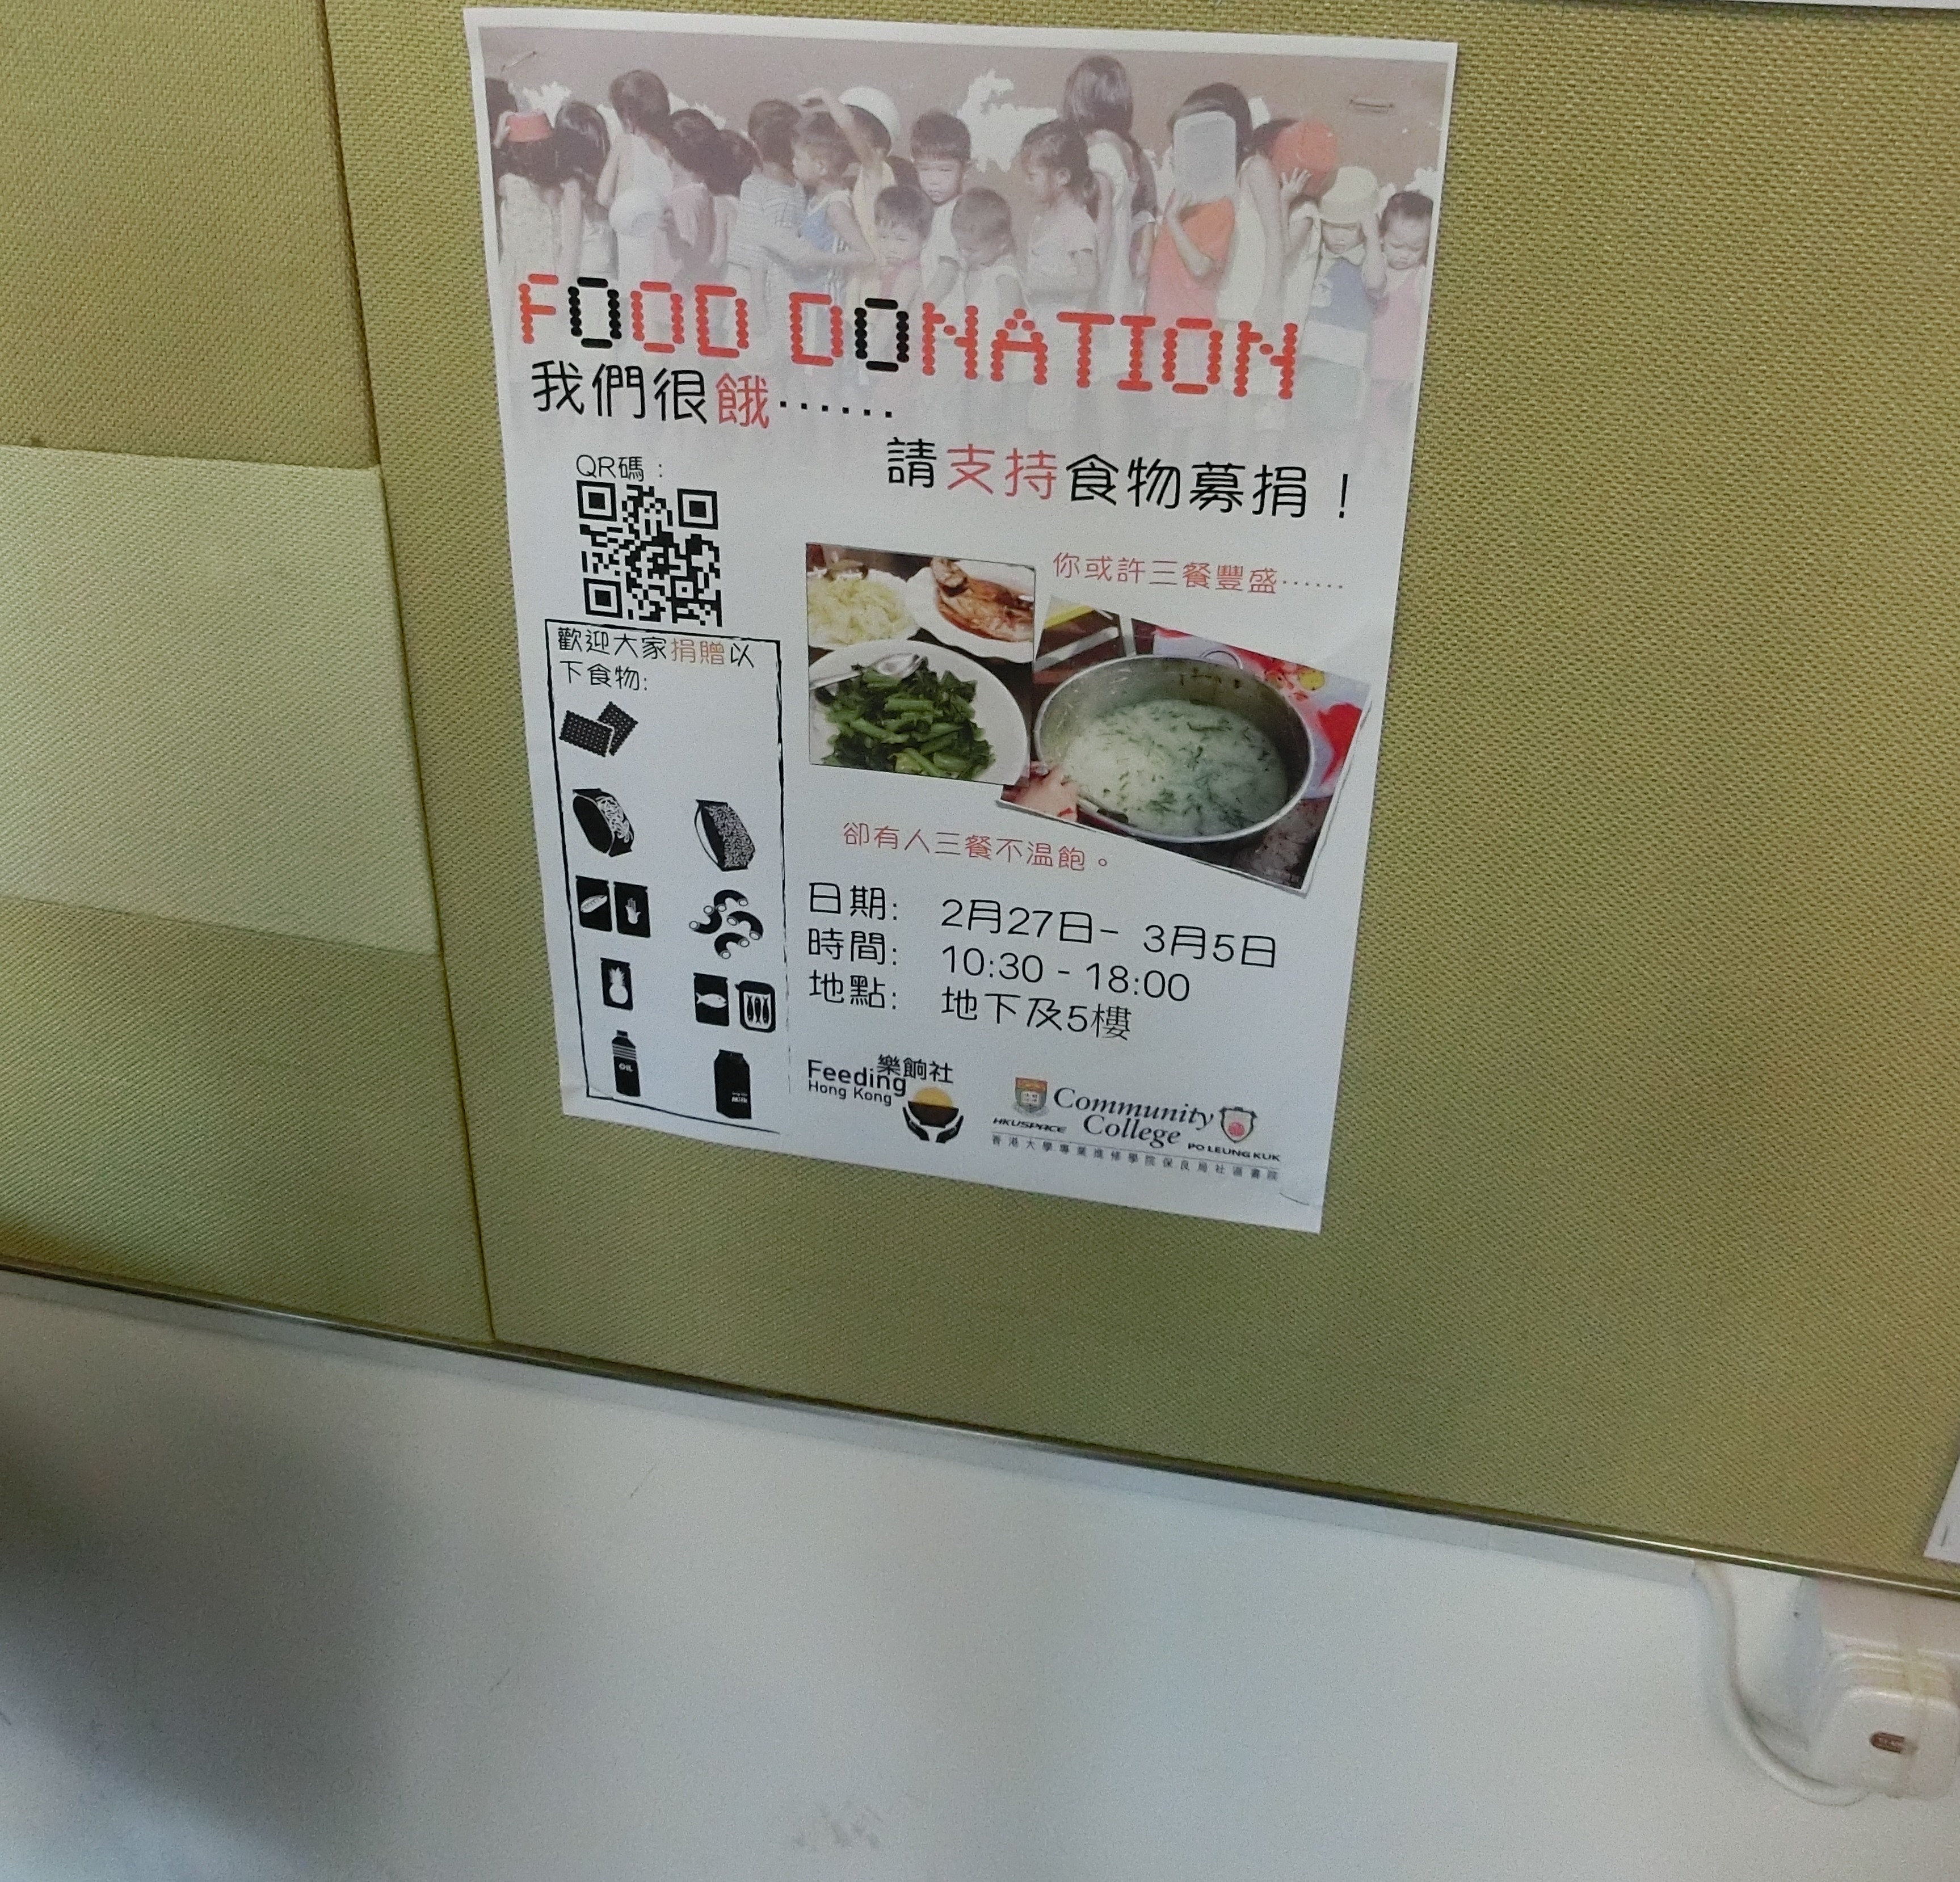 食物募捐活動 2014 - Photo - 27